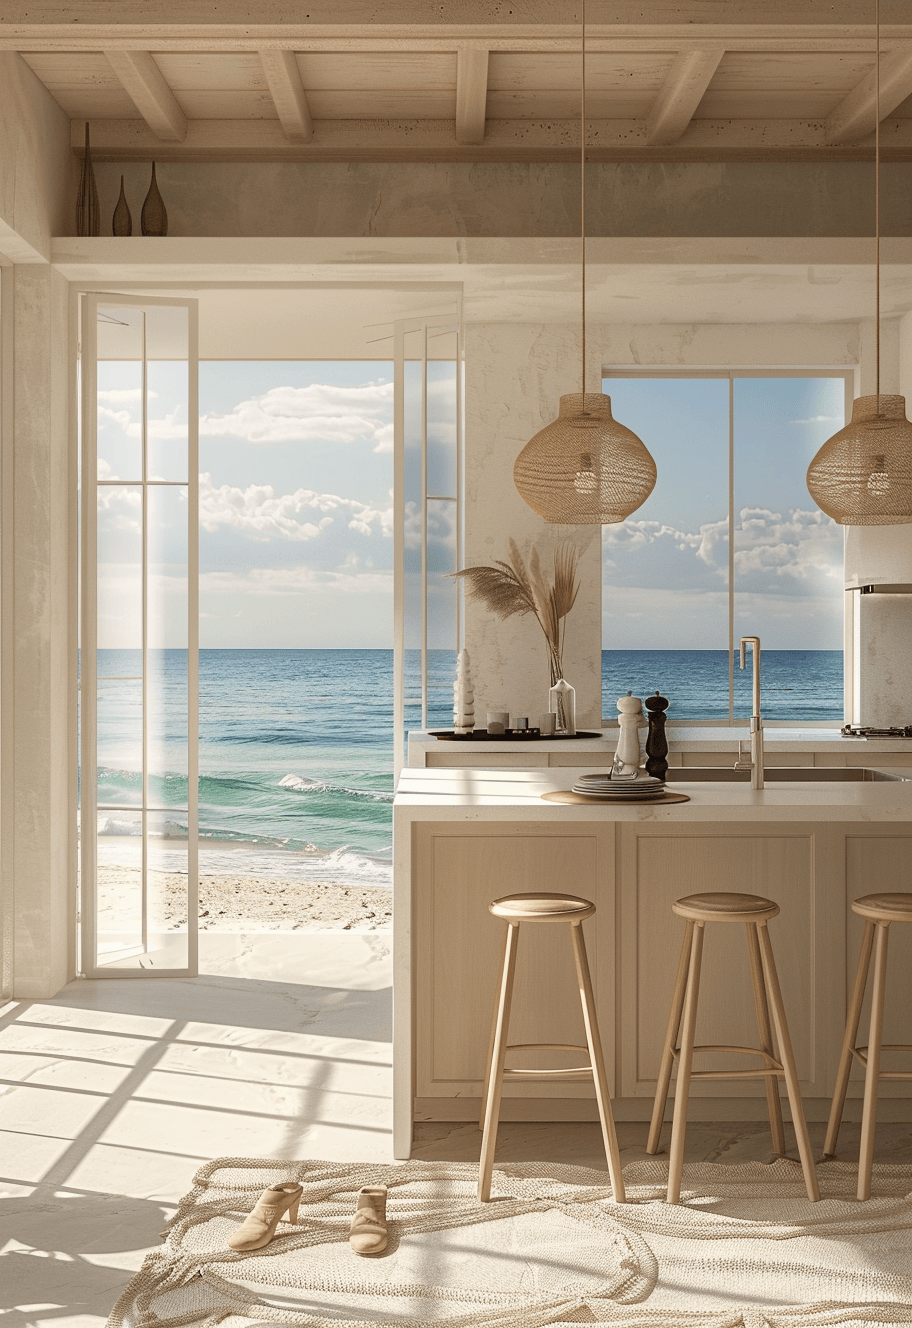 Coastal Kitchen Appliances/ Sleek, stainless steel appliances in a kitchen with coastal decor